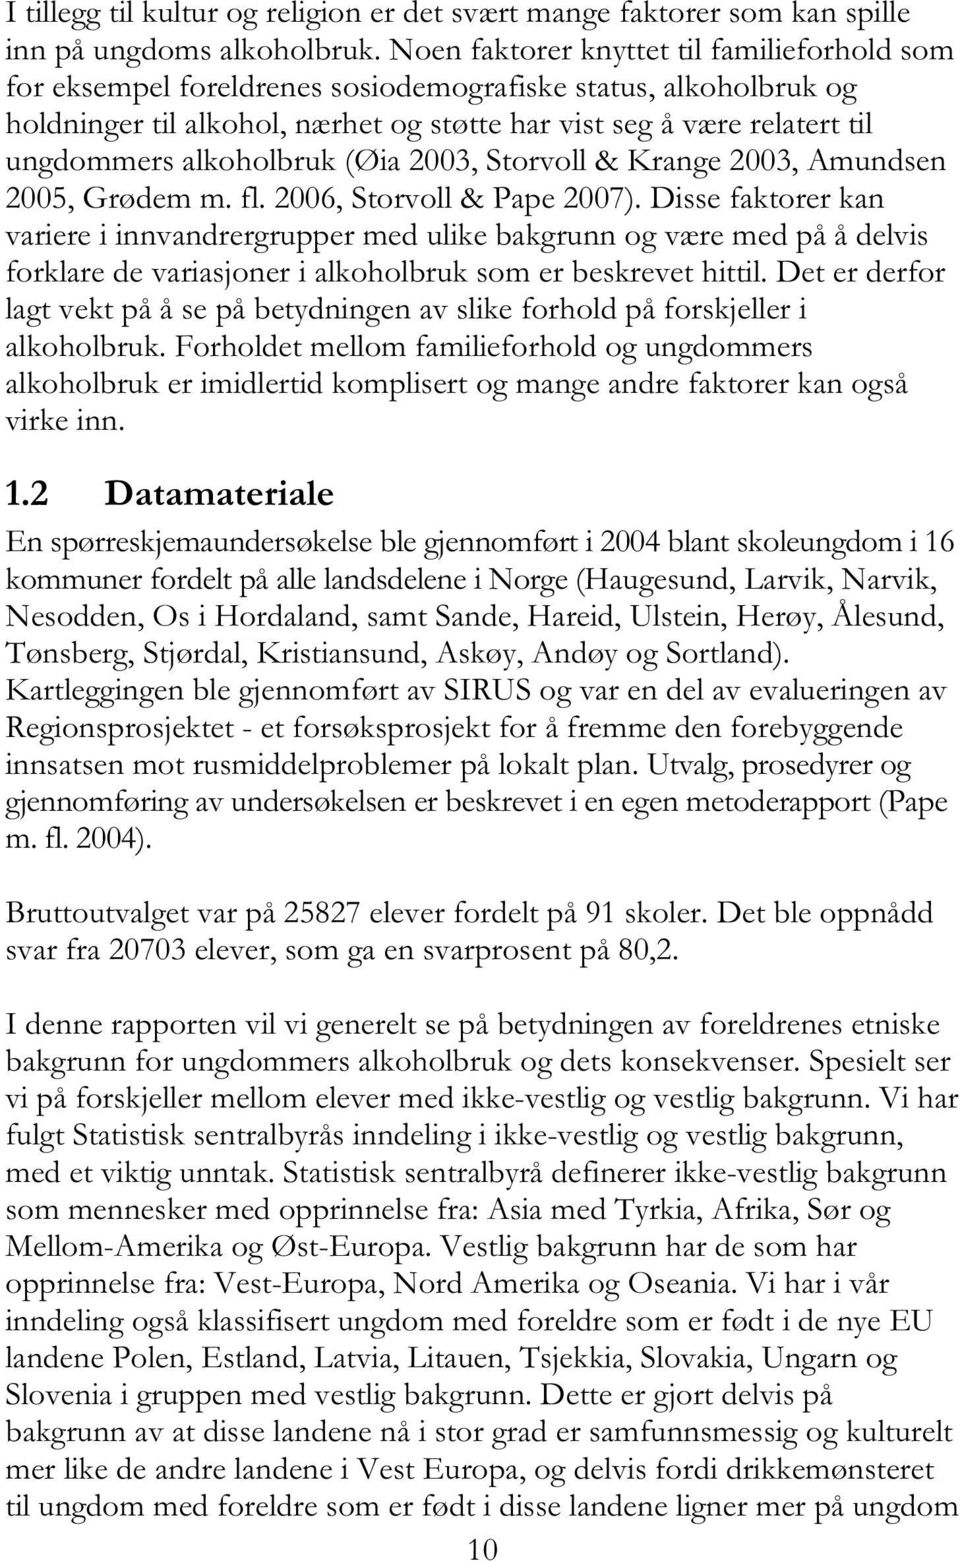 alkoholbruk (Øia 2003, Storvoll & Krange 2003, Amundsen 2005, Grødem m. fl. 2006, Storvoll & Pape 2007).